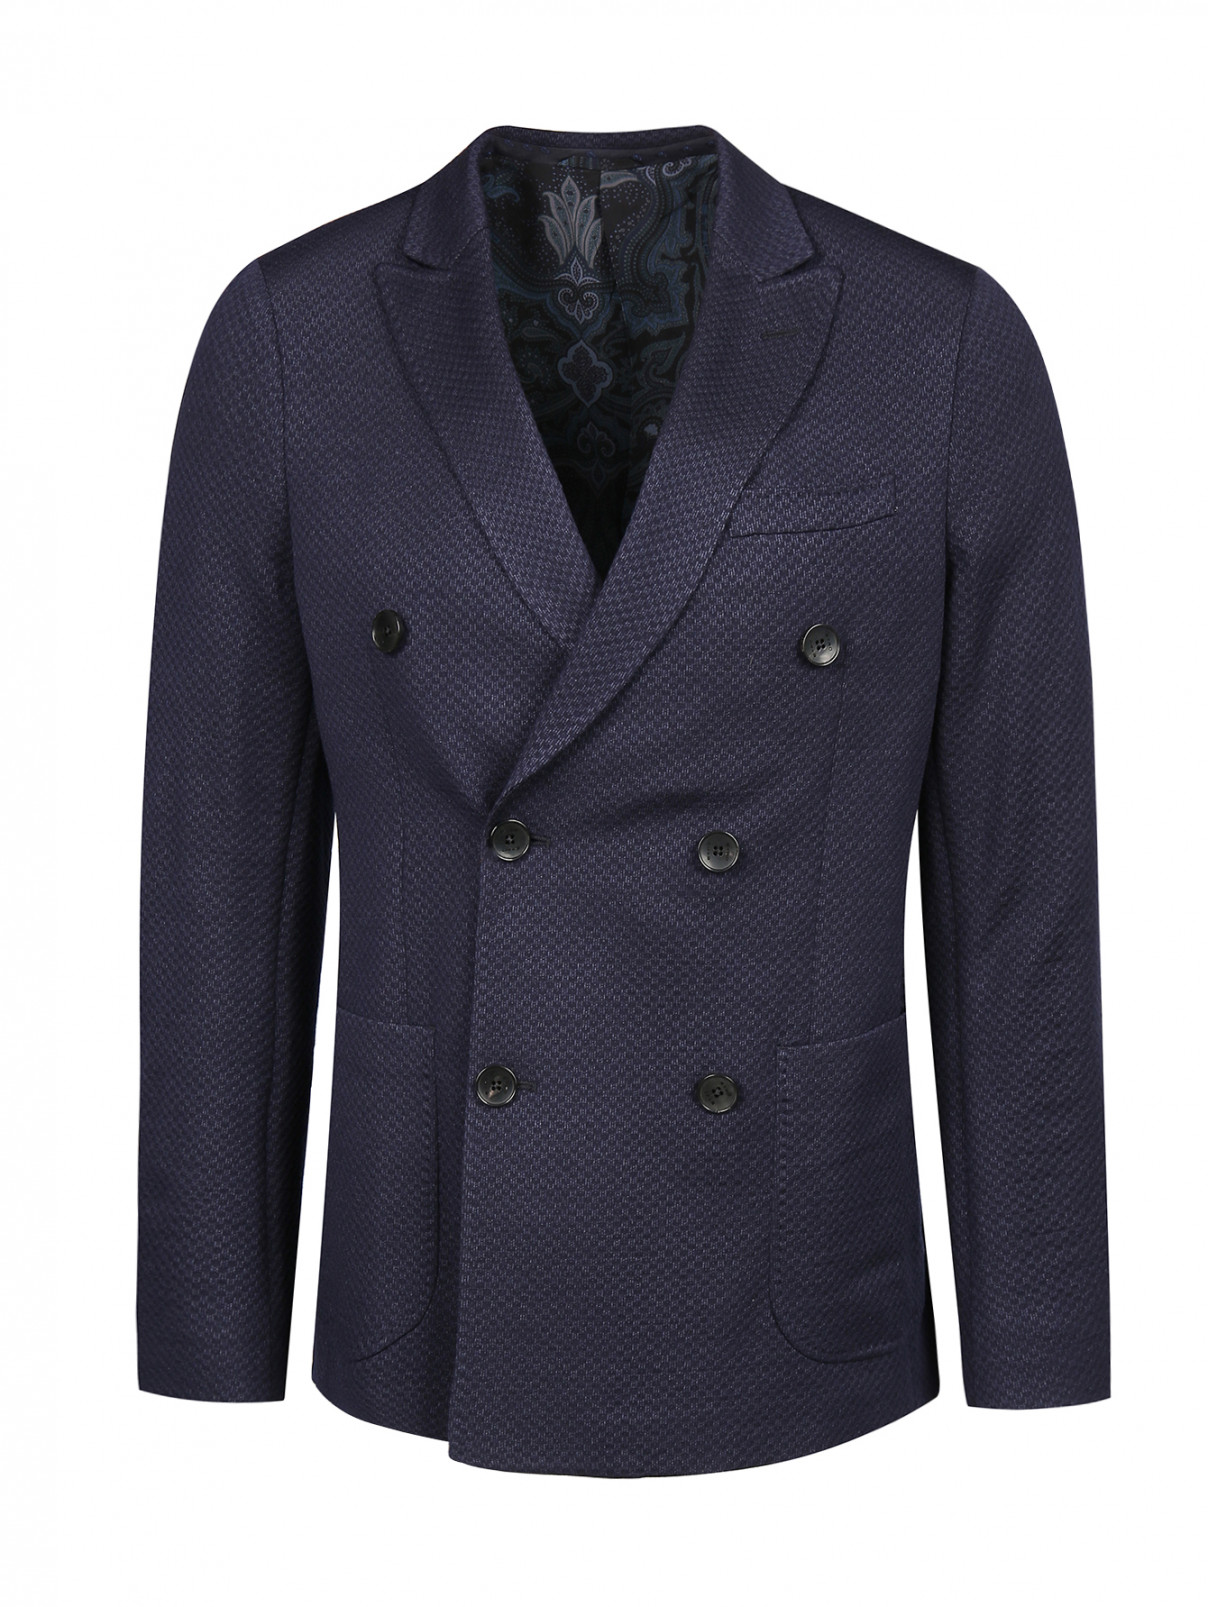 Пиджак из шерсти и шелка Etro  –  Общий вид  – Цвет:  Синий